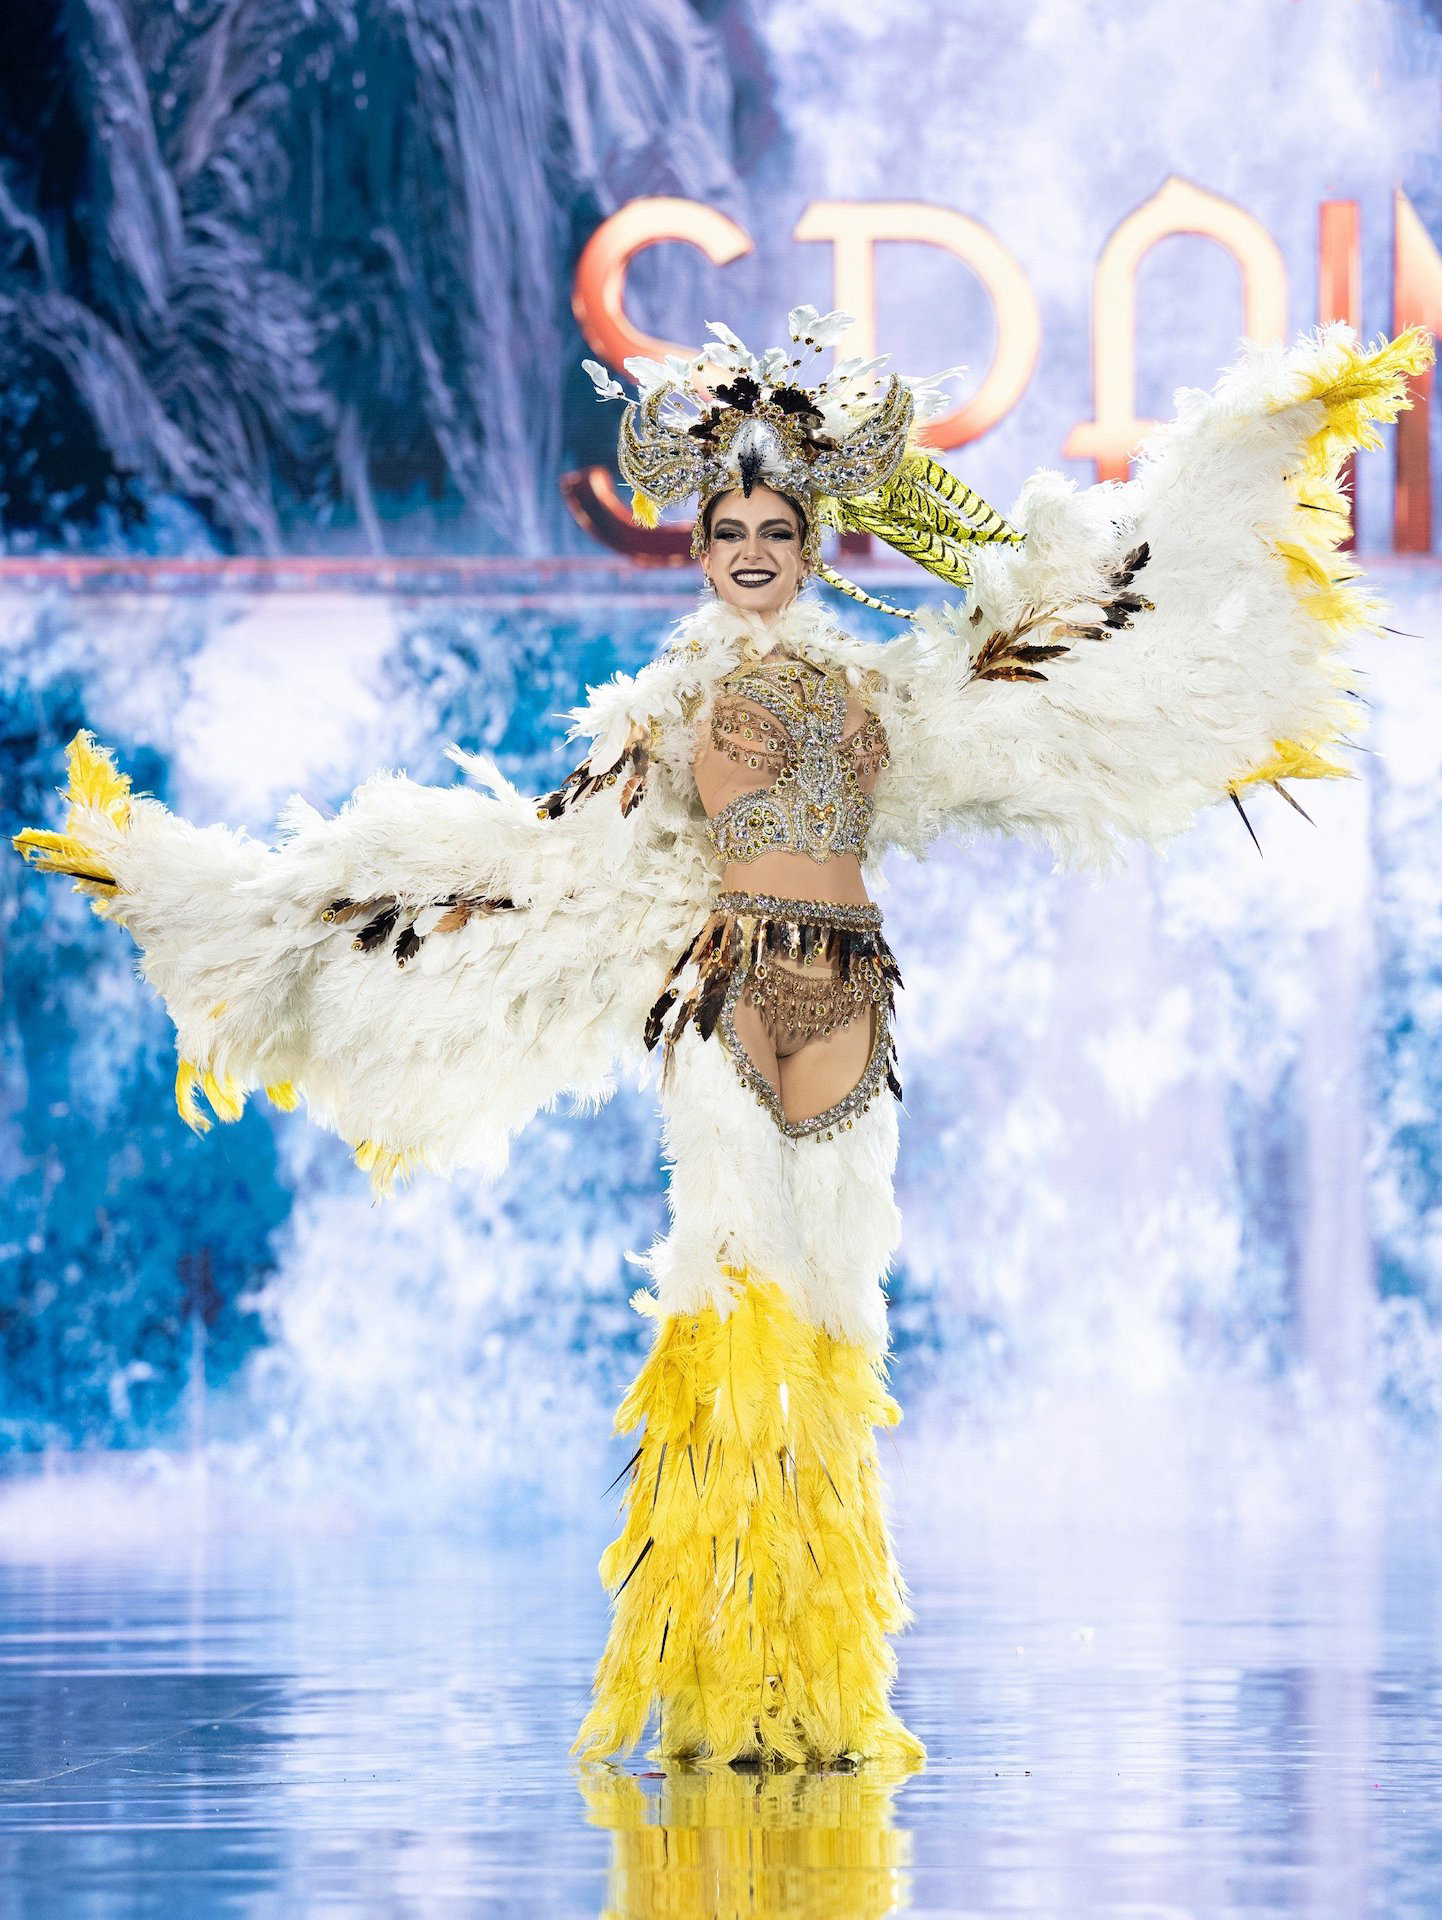 Lê Hoàng Phương bùng nổ tại đêm thi trang phục dân tộc Miss Grand International - Ảnh 18.